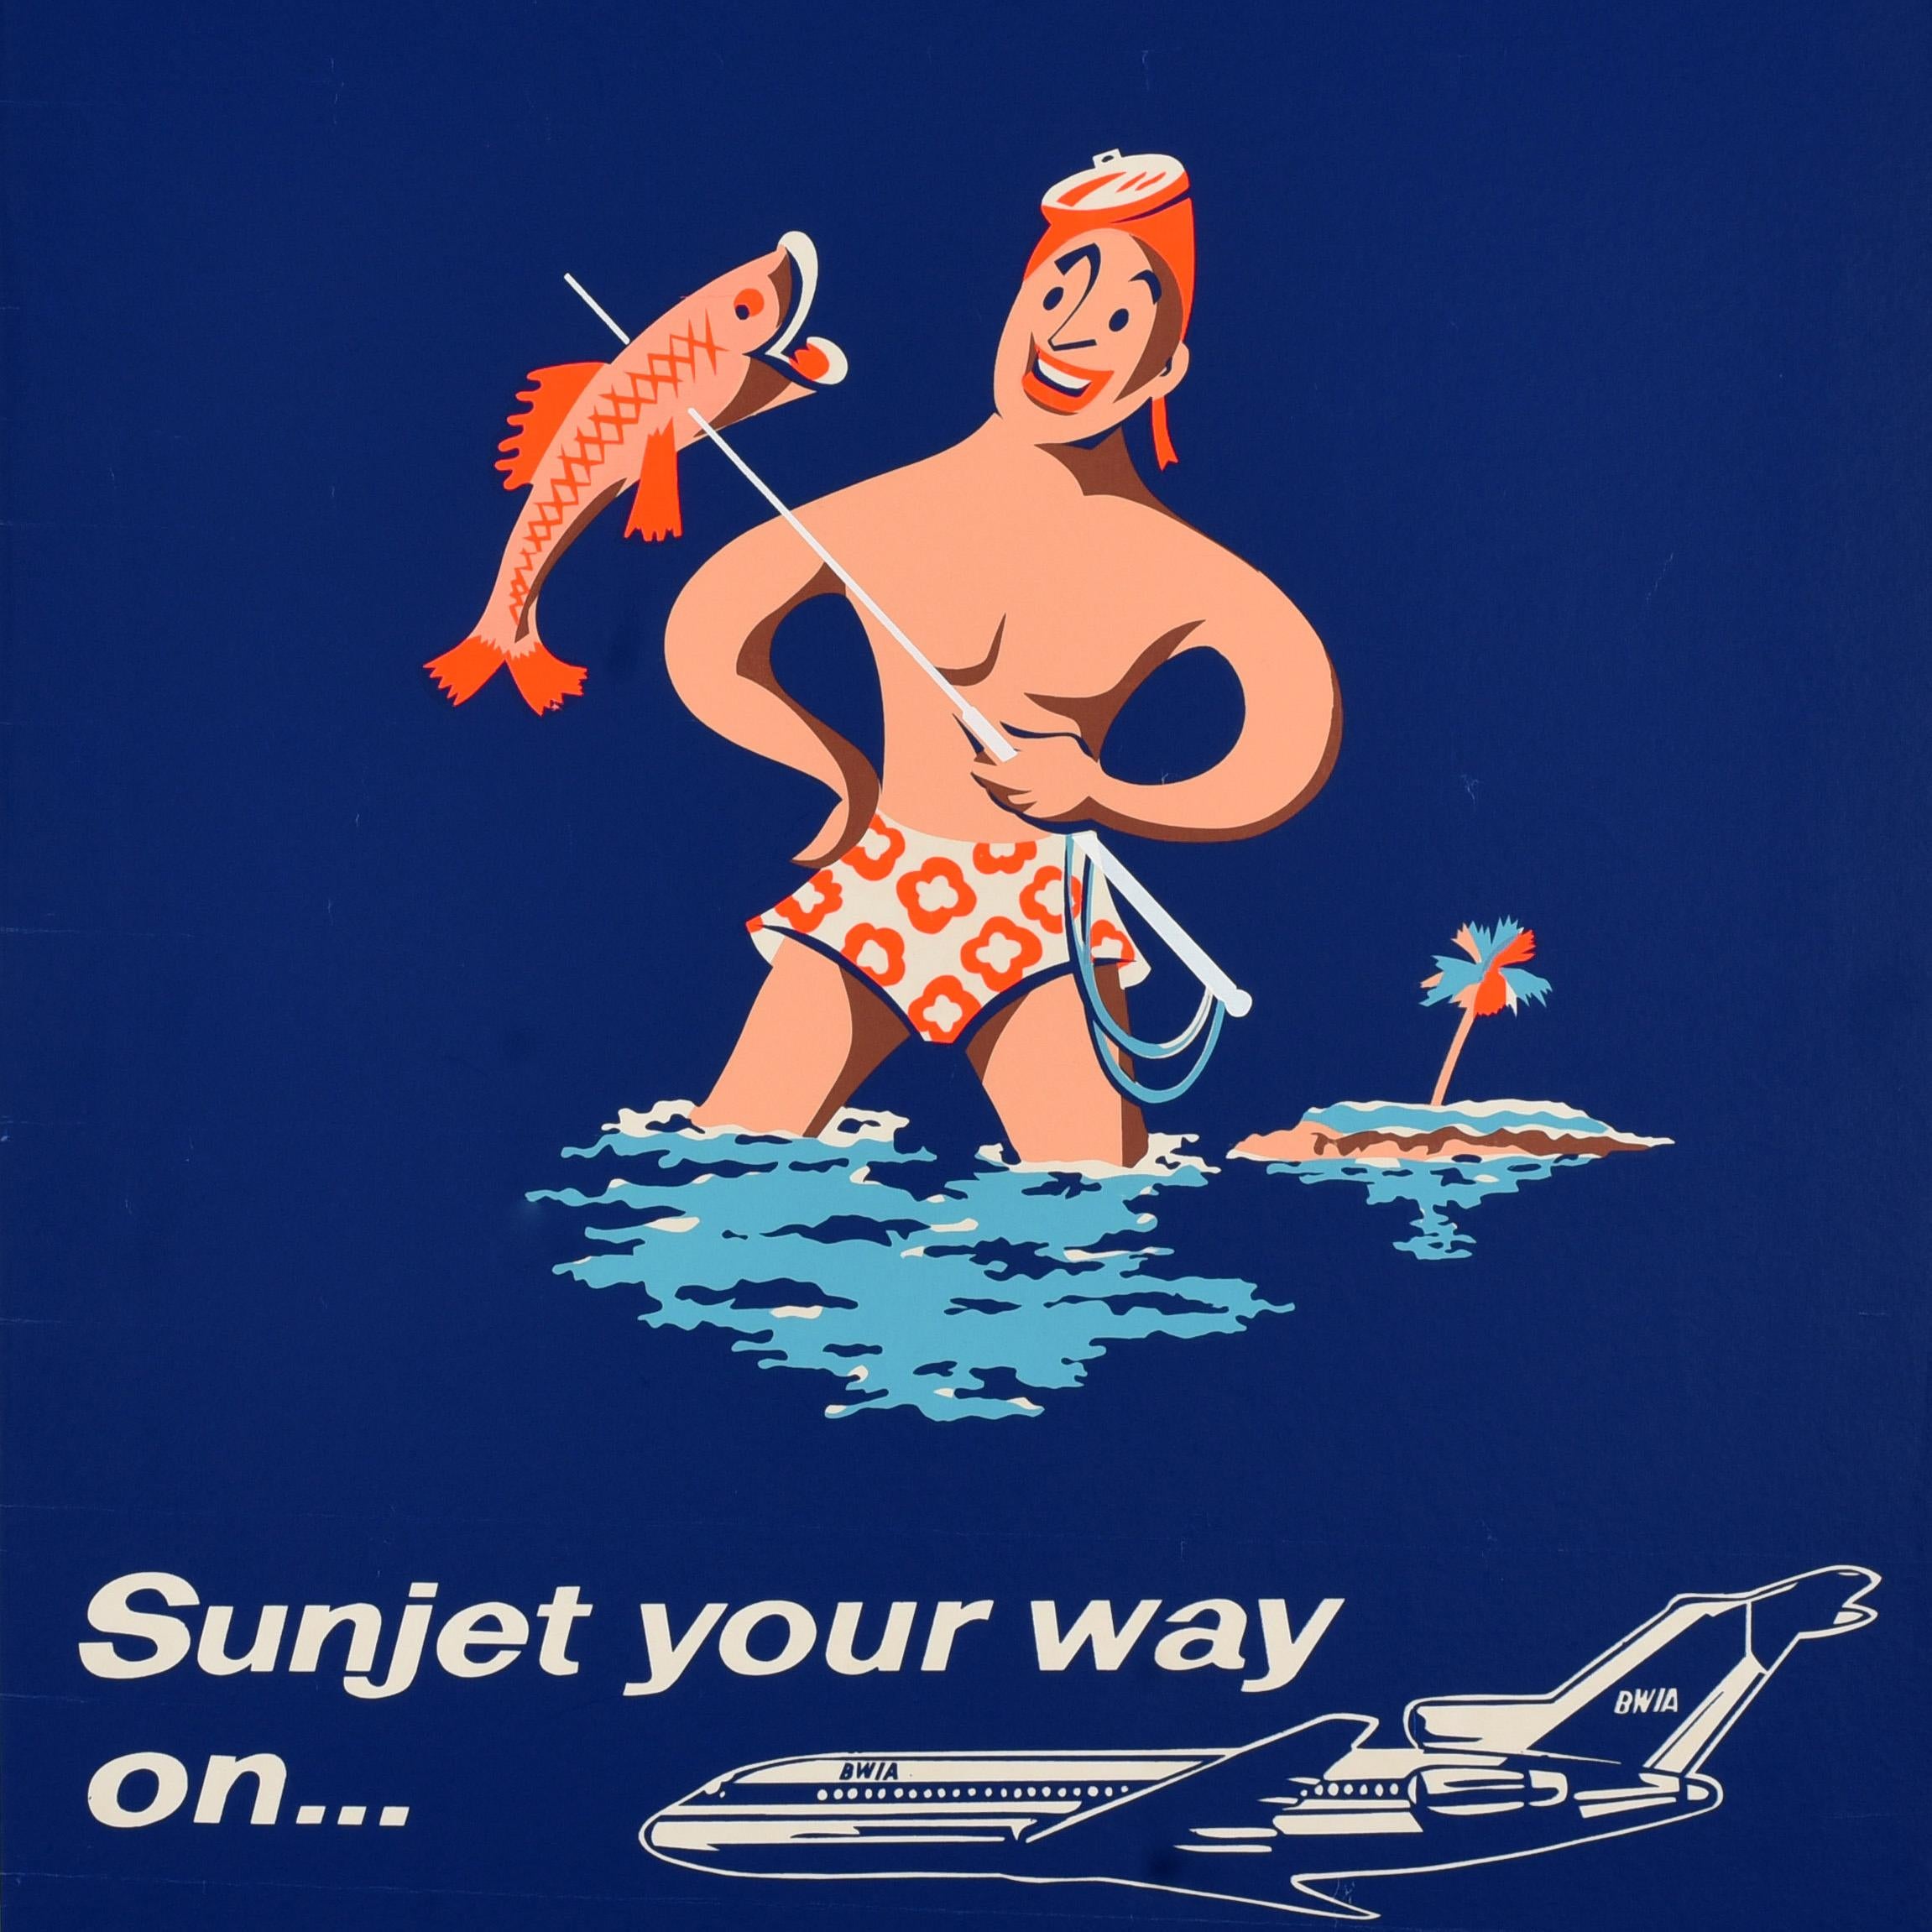 Affiche de voyage vintage originale - Antigua Sunjet your way on ... BWIA - avec un motif de pêche représentant un homme souriant portant un maillot de bain à motifs floraux et un masque sur la tête, tenant une lance avec un poisson devant un